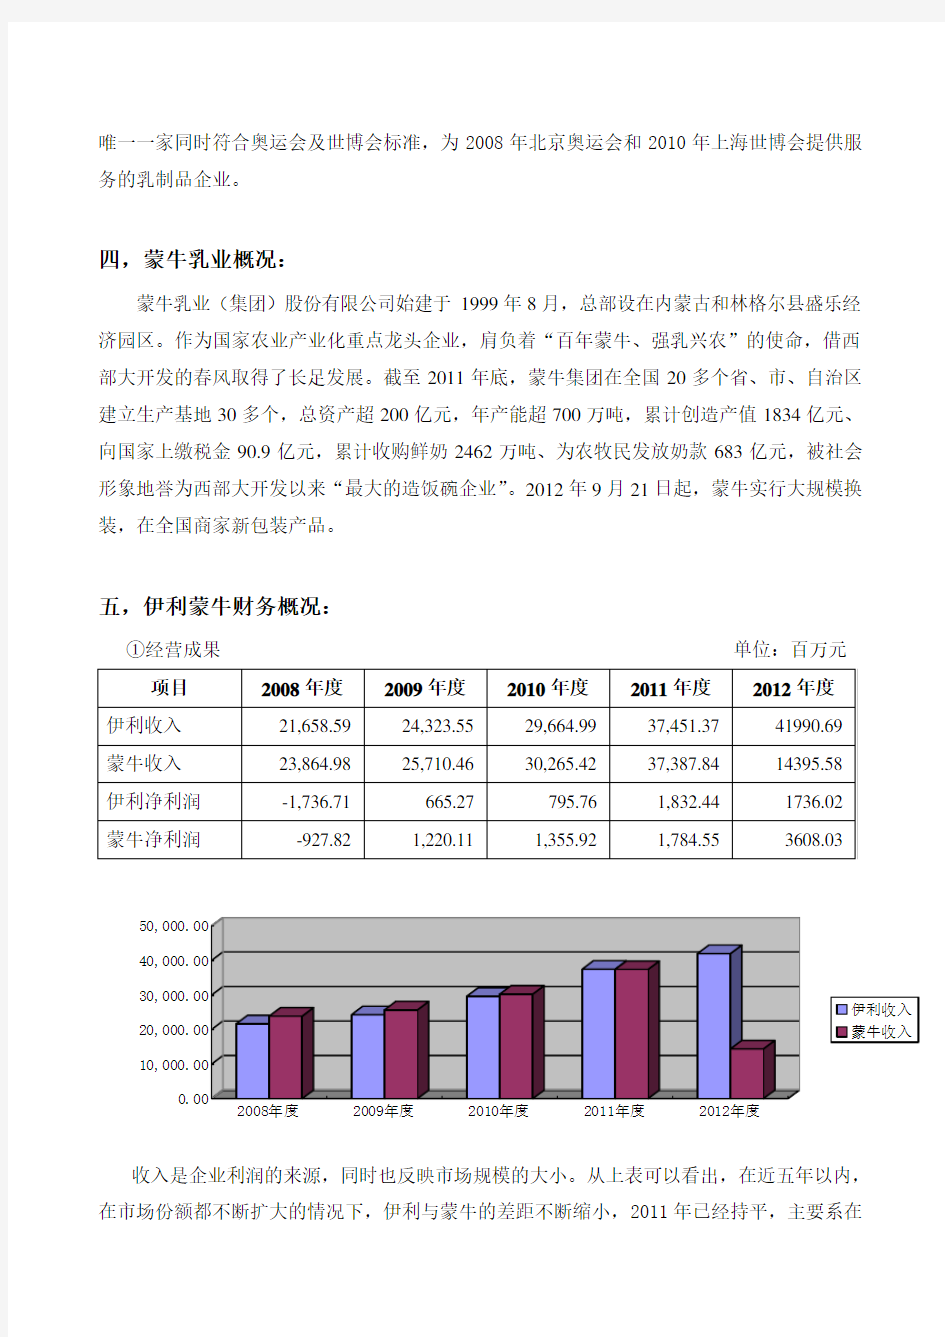 伊利蒙牛财务报表对比分析 (2008-2012)